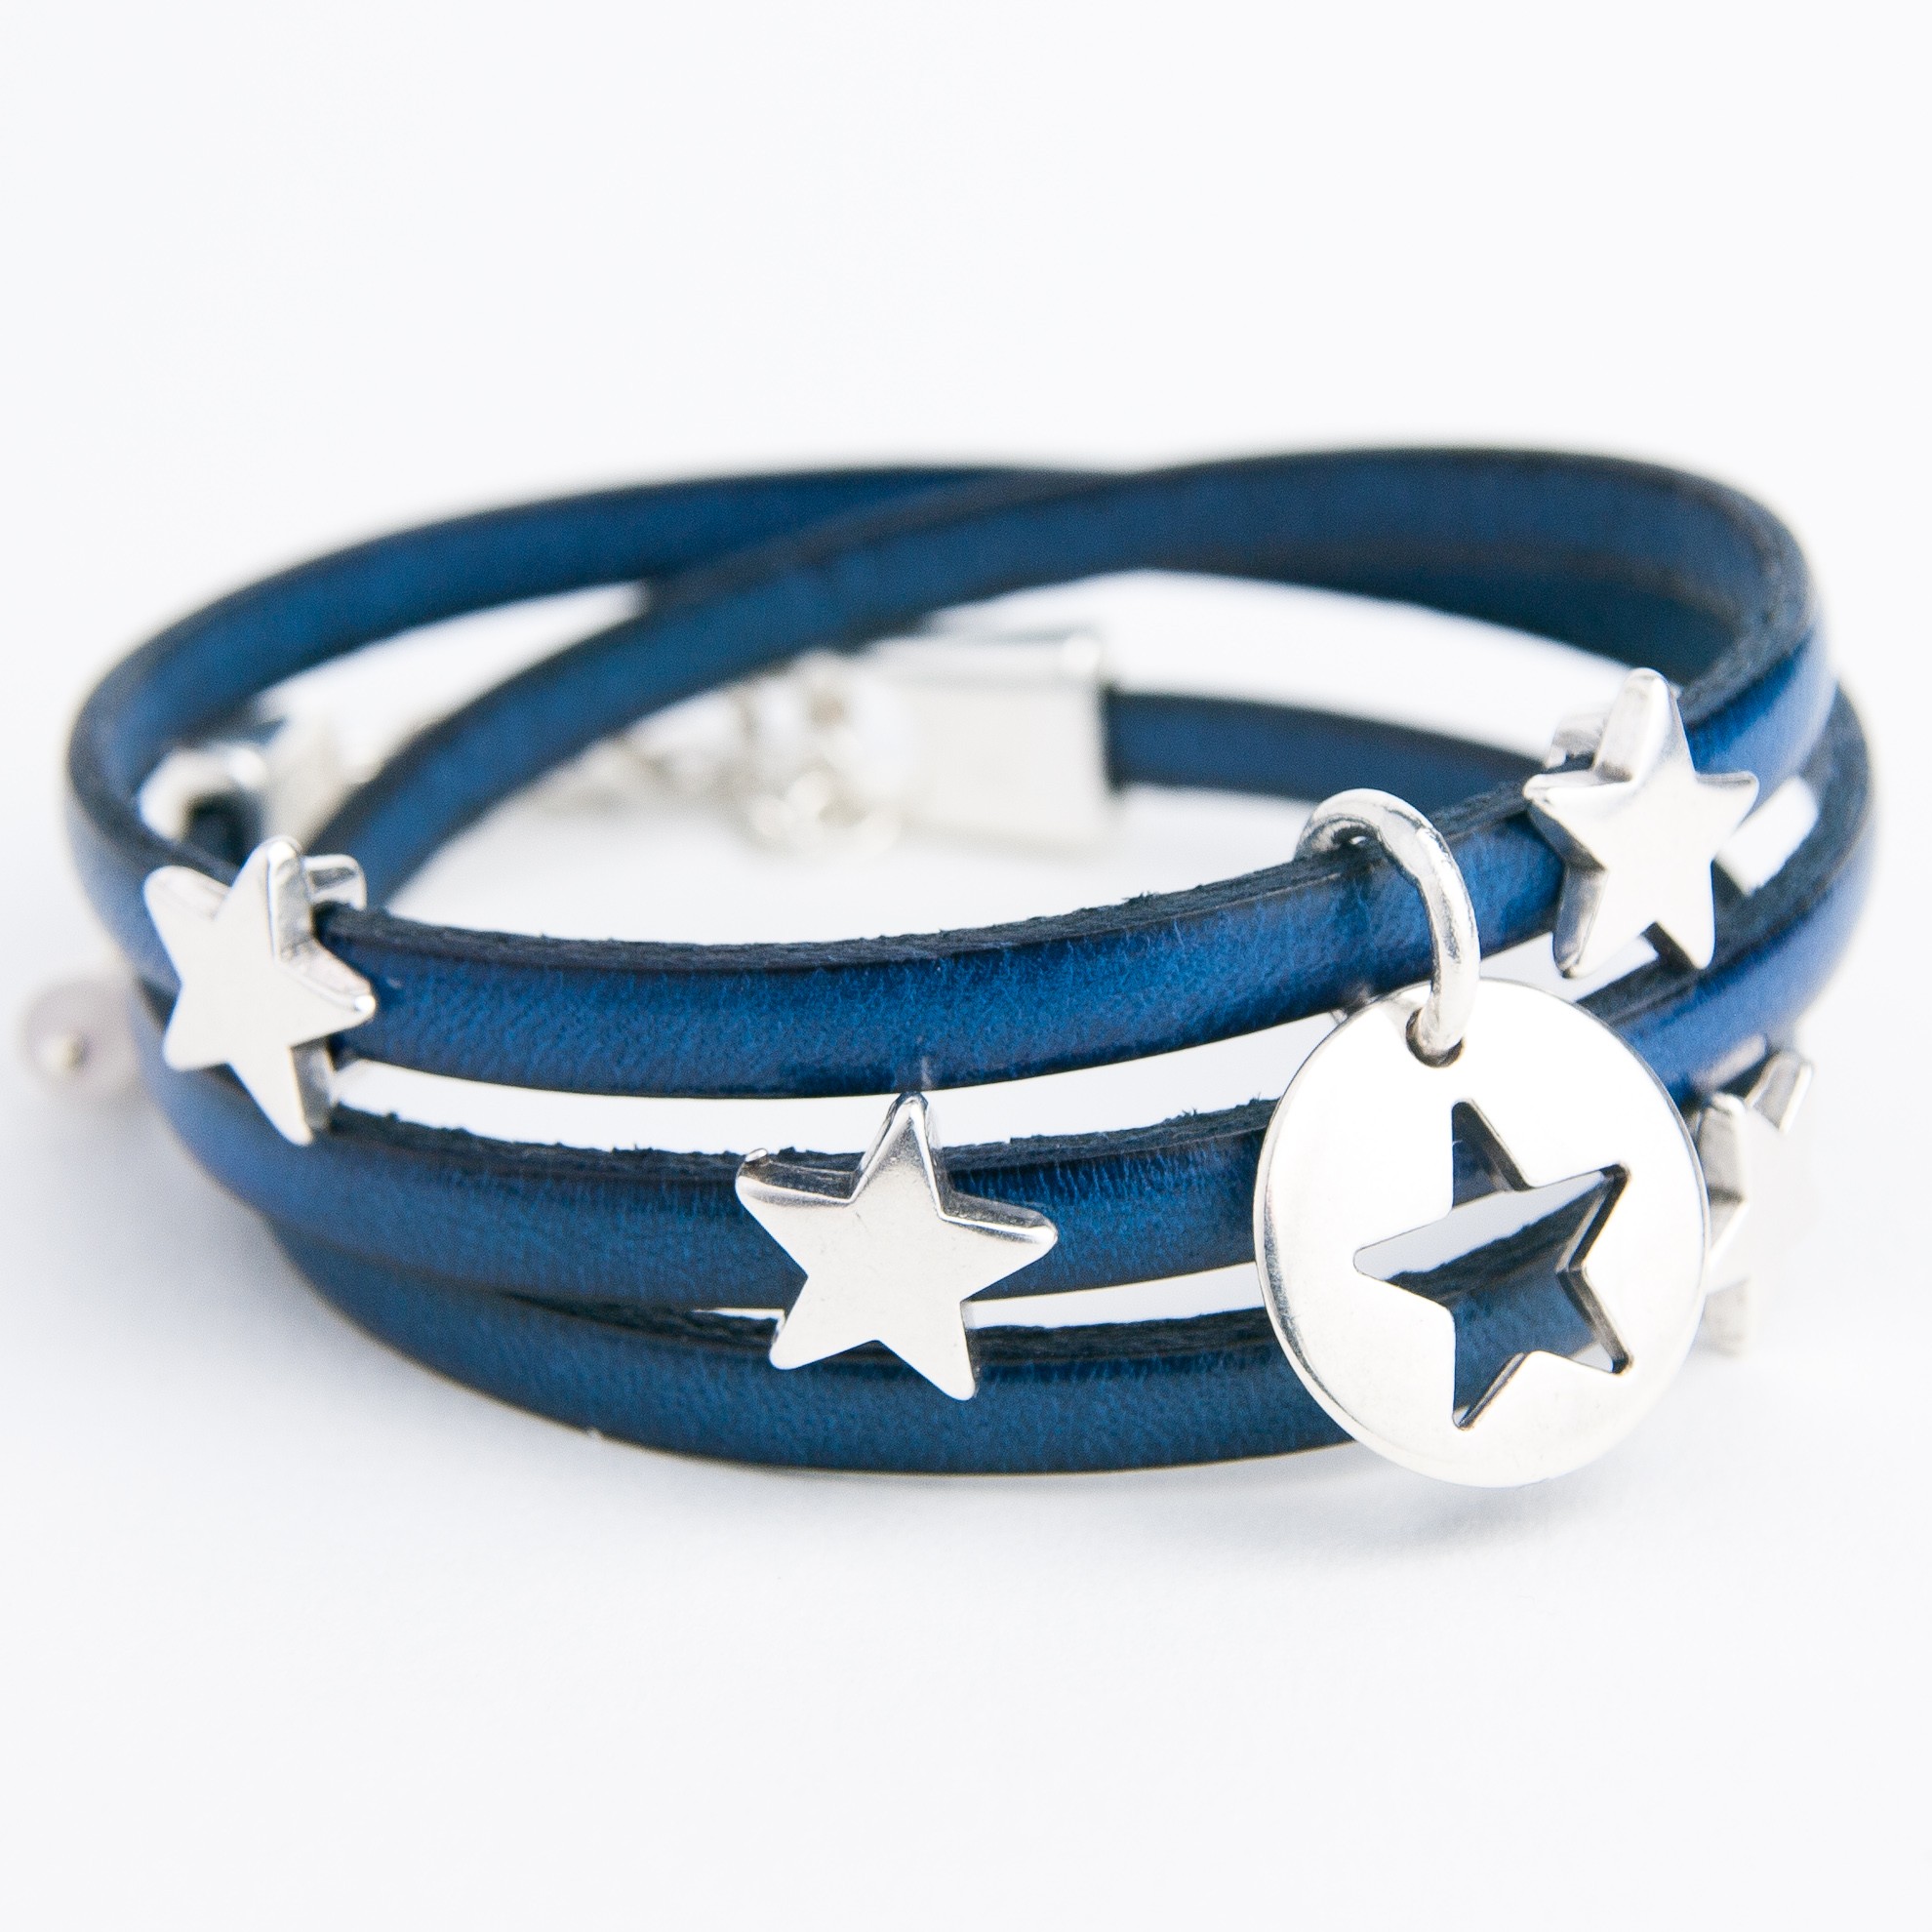 Bracelet en cuir nappa italien triple bleu avec finition argentée – Gemini  Official